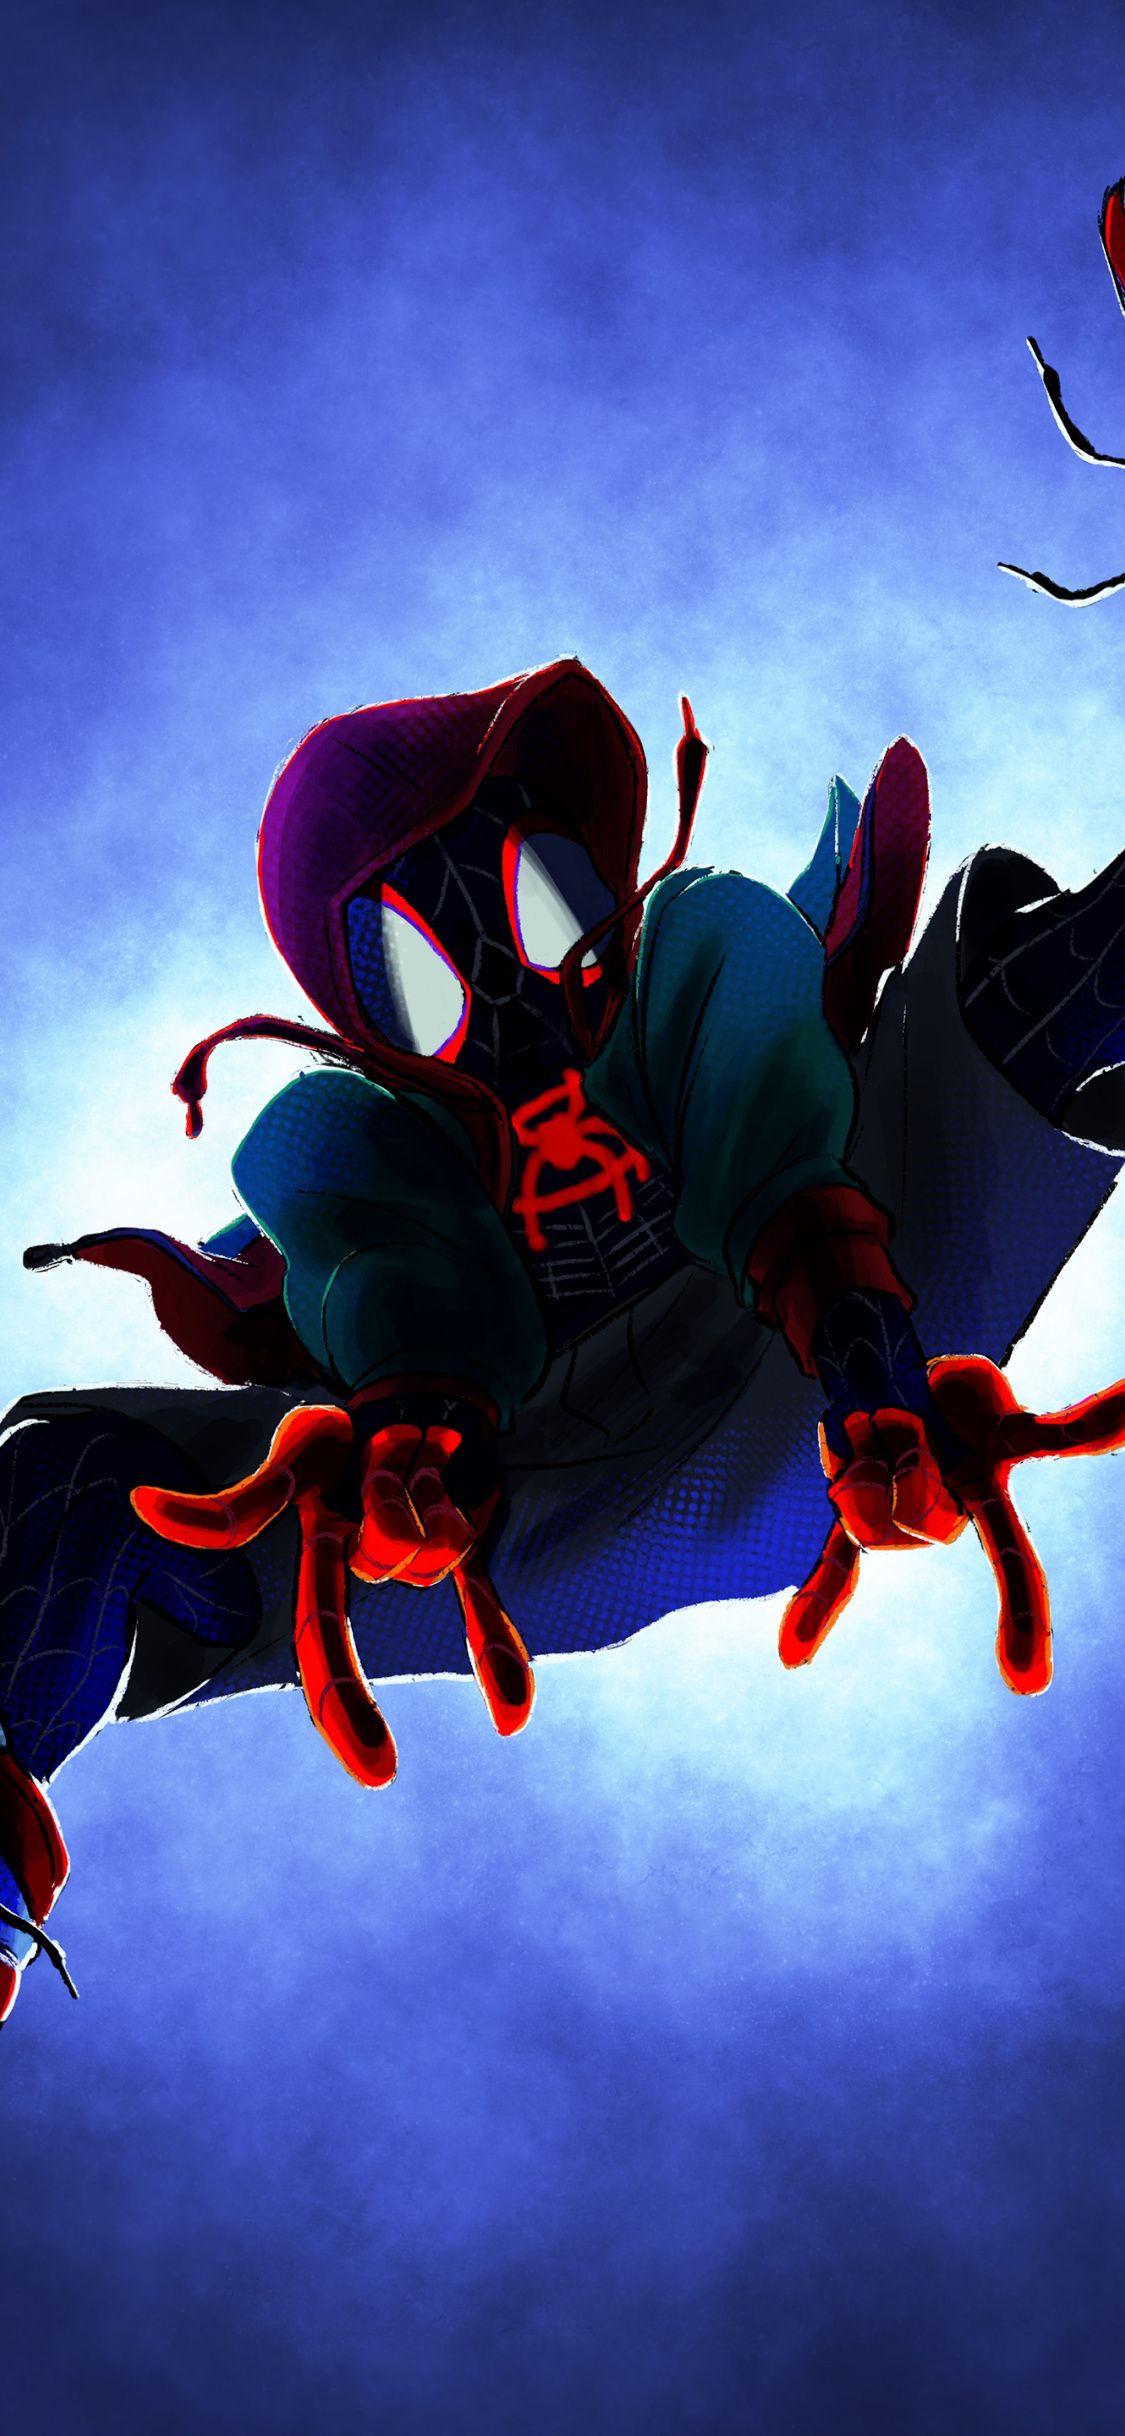 Dive, Supehero, Movie, Spider Man: Into The Spider Verse, Fan Art